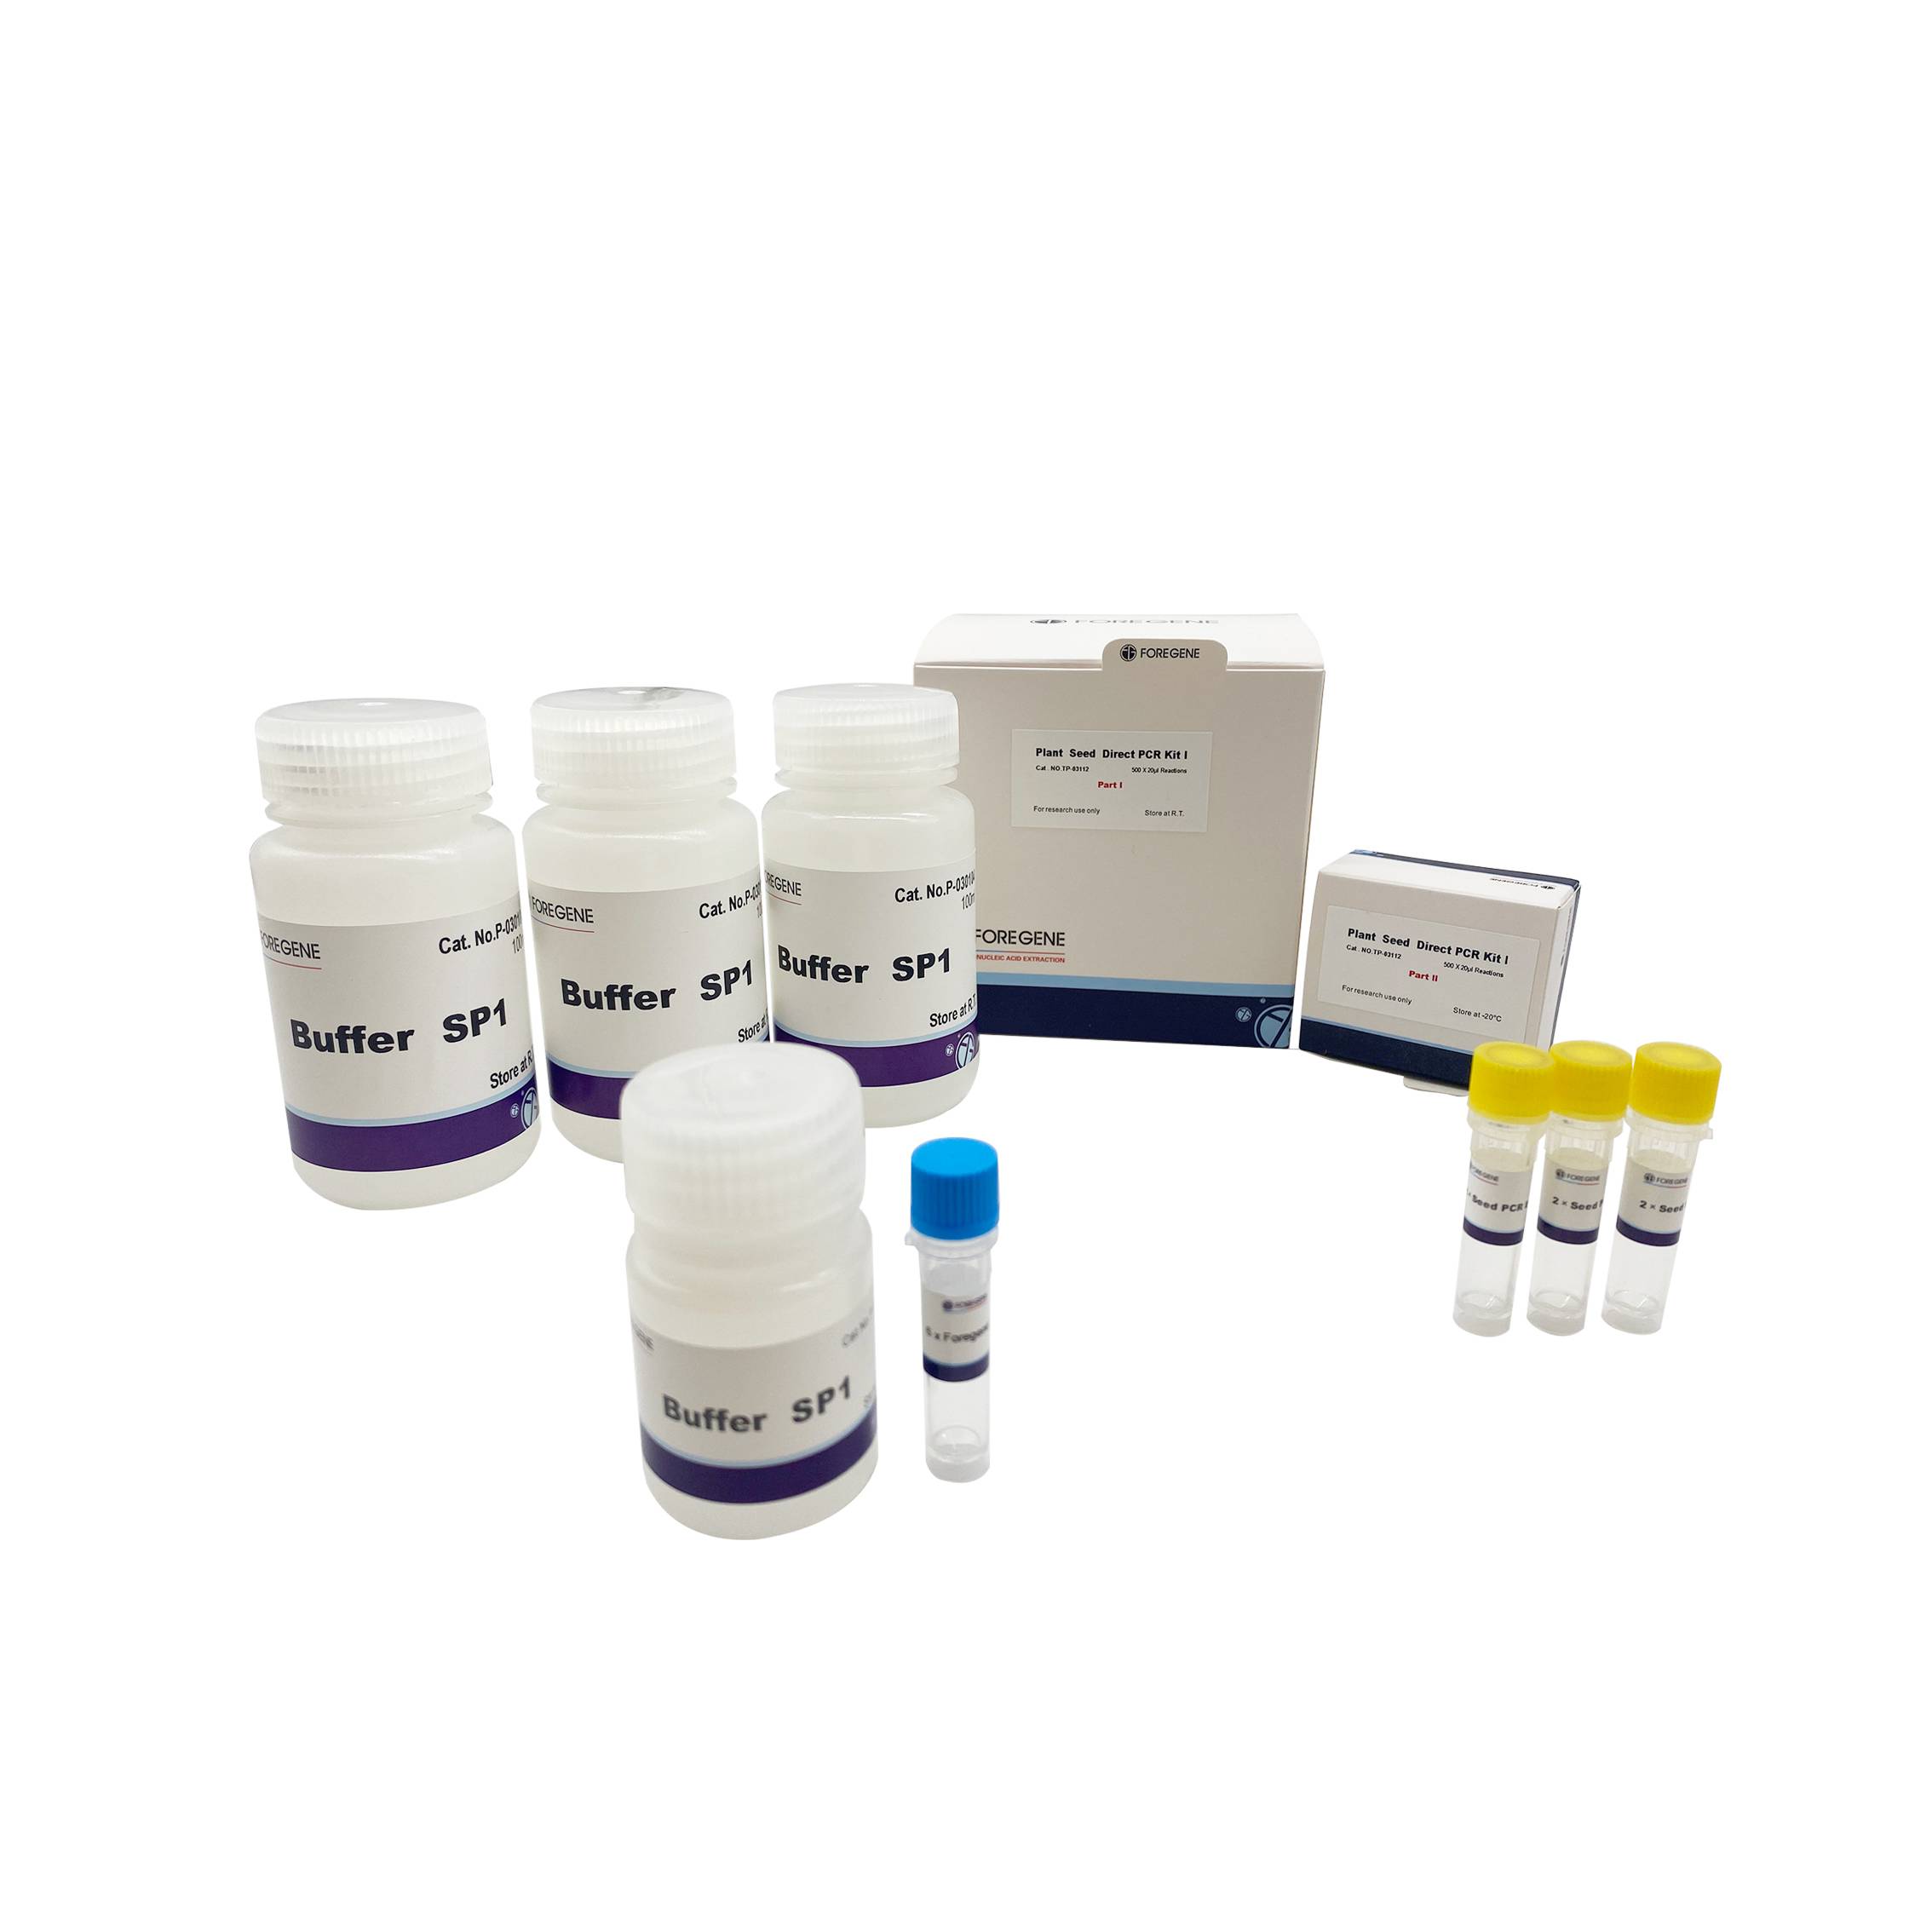 Plant Seed Direct PCR Kit I/II (bez narzędzi do pobierania próbek) Protokół Plant Direct PCR Kit